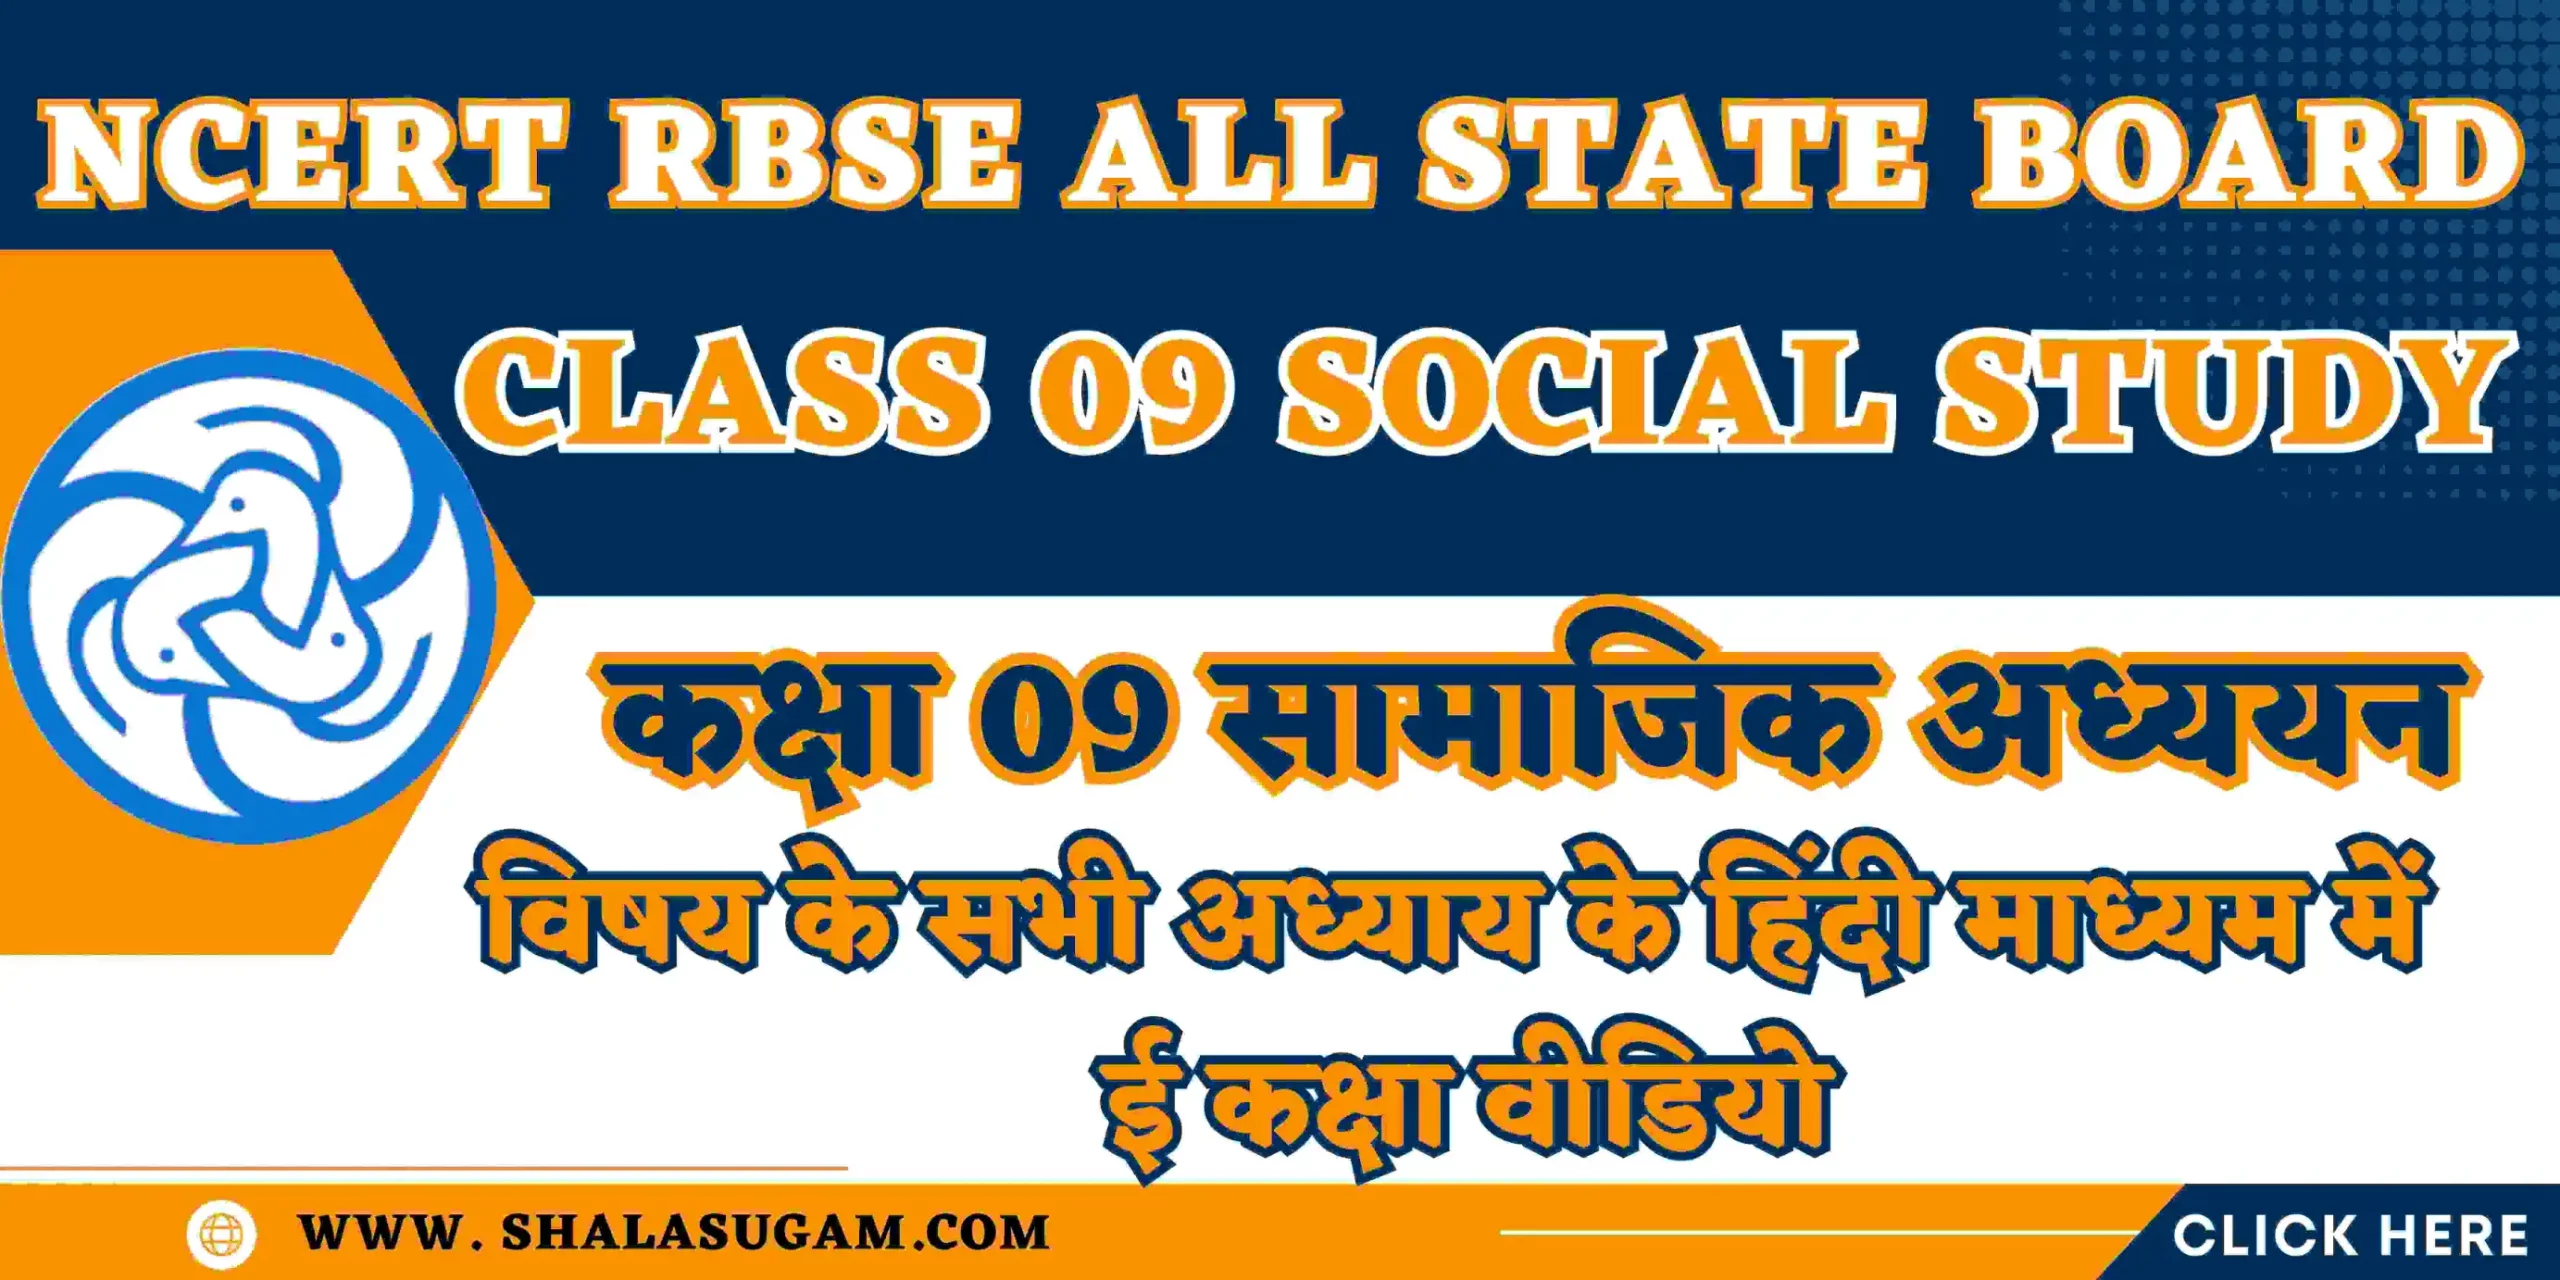 NCERT RBSE CLASS 09 SOCIAL STUDY CHAPTERS VIDEOS : नमस्कार 🙏प्यारे विद्यार्थियों🧑🏻‍🎓और आदरणीय👨🏻‍🦳अभिभावकों 🤷🏻‍♂️, यहाँ हम आपके लिए शिक्षा विभाग राजस्थान के ई कक्षा के NCERT RBSE CLASS 09 SOCIAL STUDY CHAPTERS VIDEOS के हिंदी माध्यम के वीडियो लिंक आपके लिए साझा कर रहे हैं, जिसमे आप सीधे वांछित प्रकरण के लिए वीडियो लिंक पर क्लिक करके सीधे युट्यूब पर वीडियो देख सकते हैं |